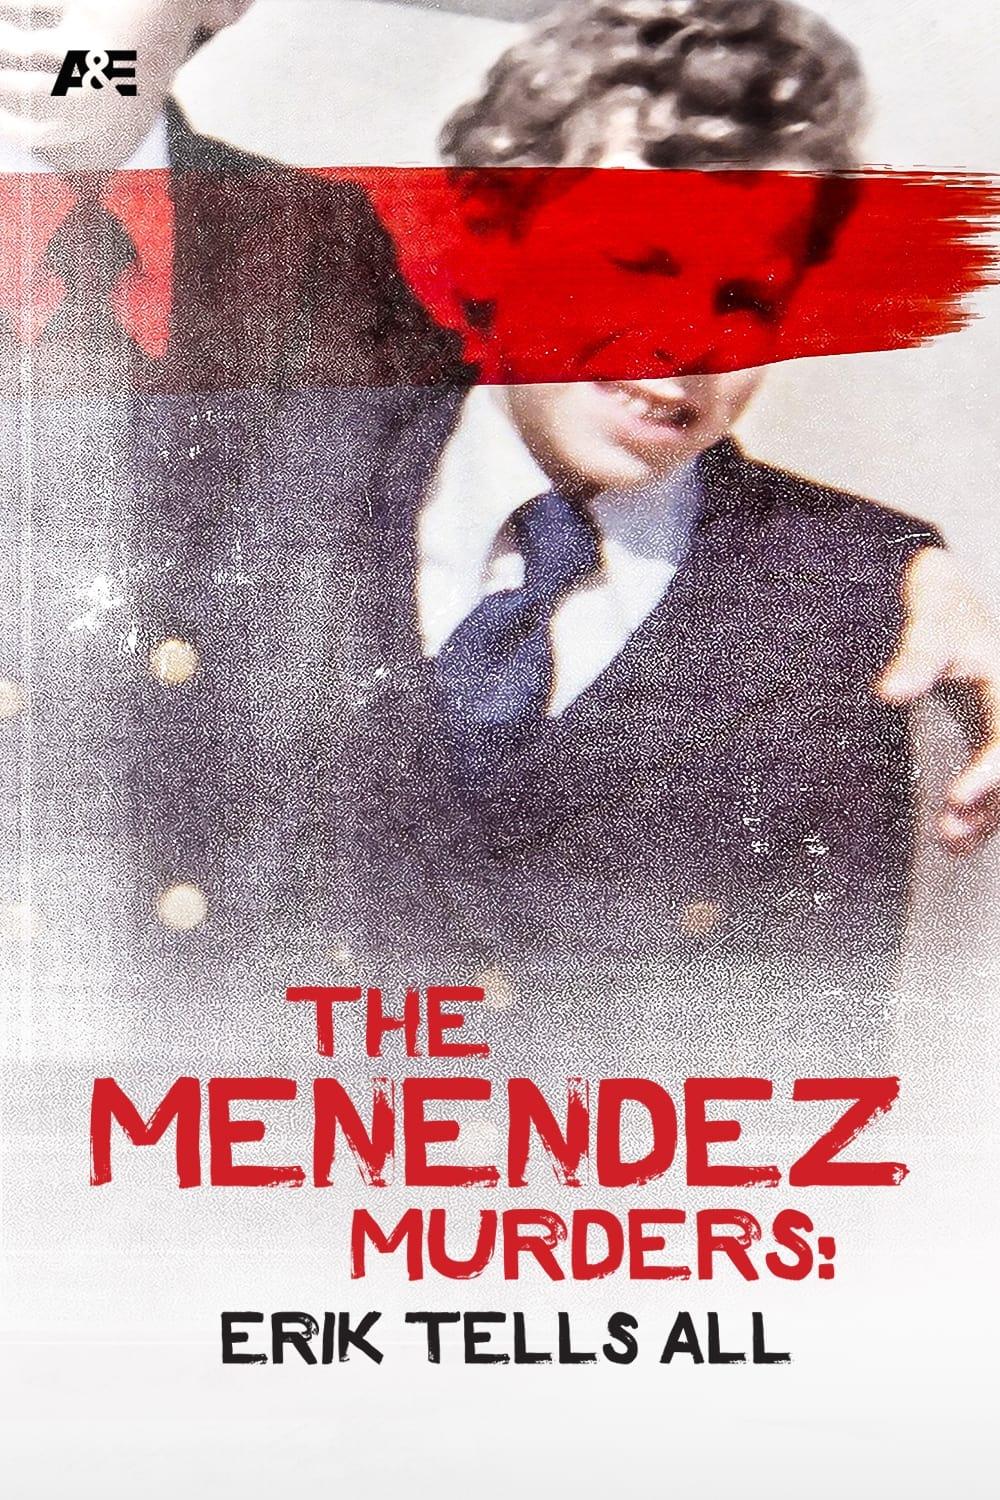 The Menendez Murders: Erik Tells All poster